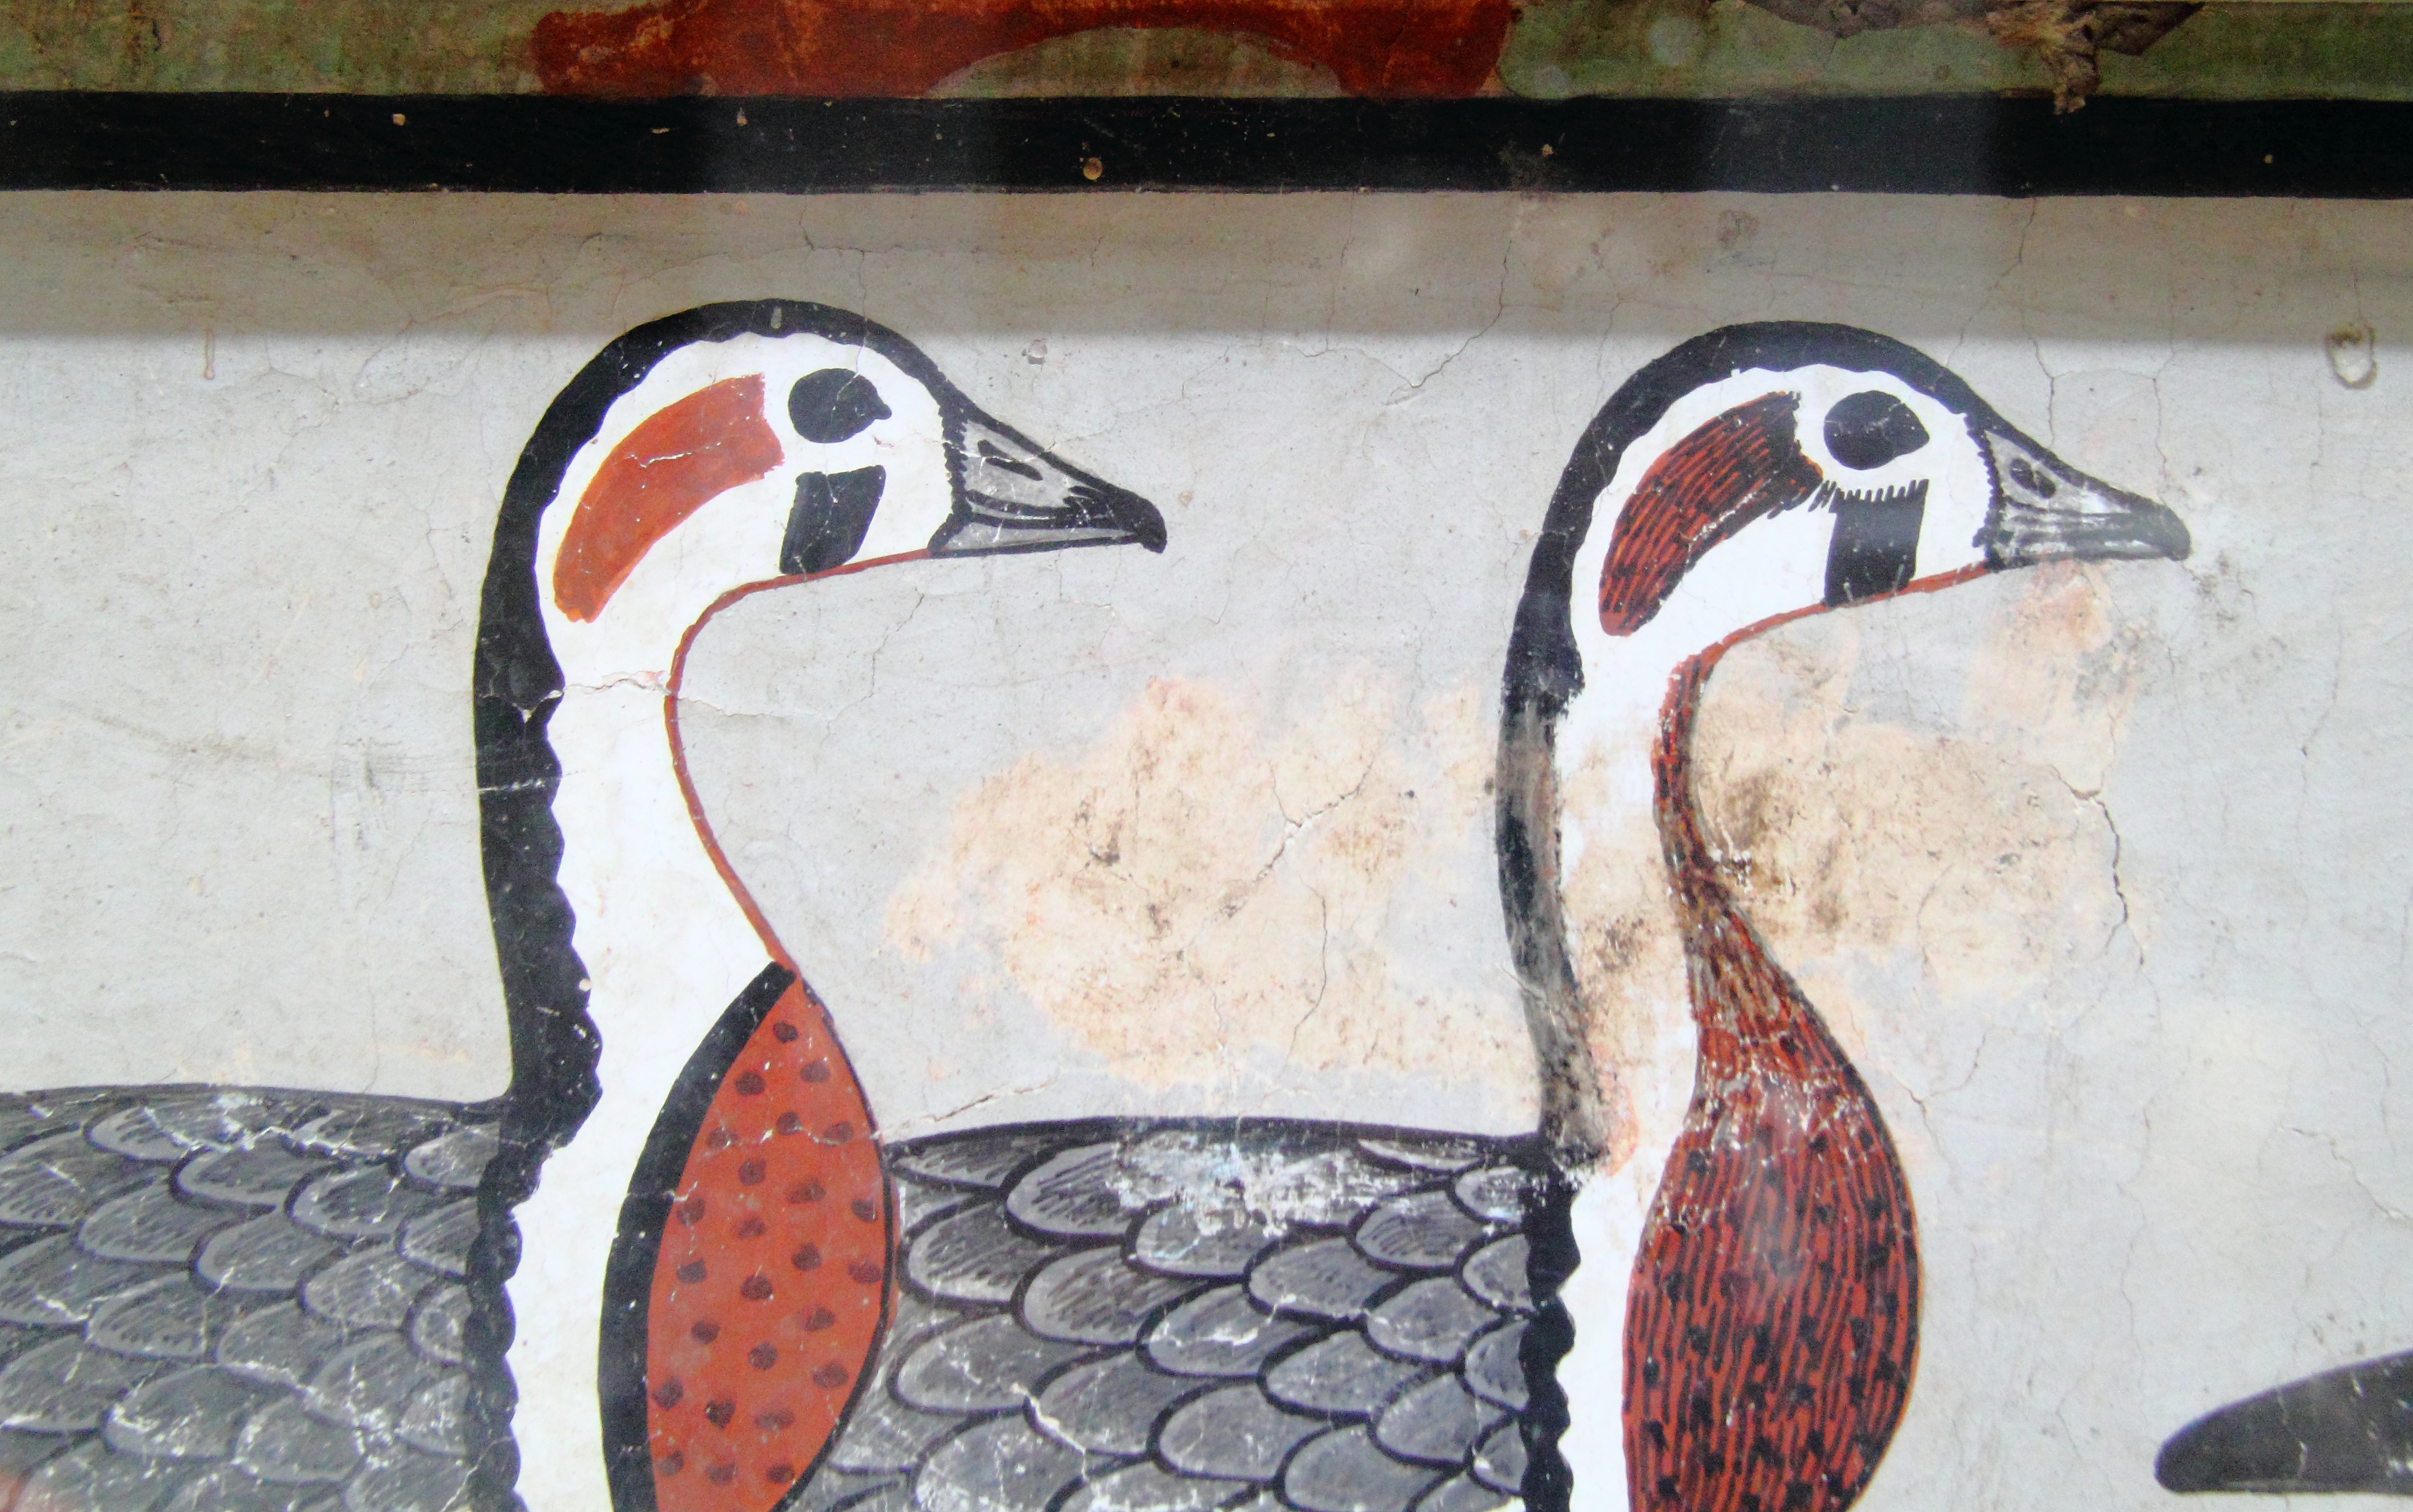 Kihalt lúdfajt találtak az egyik leghíresebb egyiptomi festményen